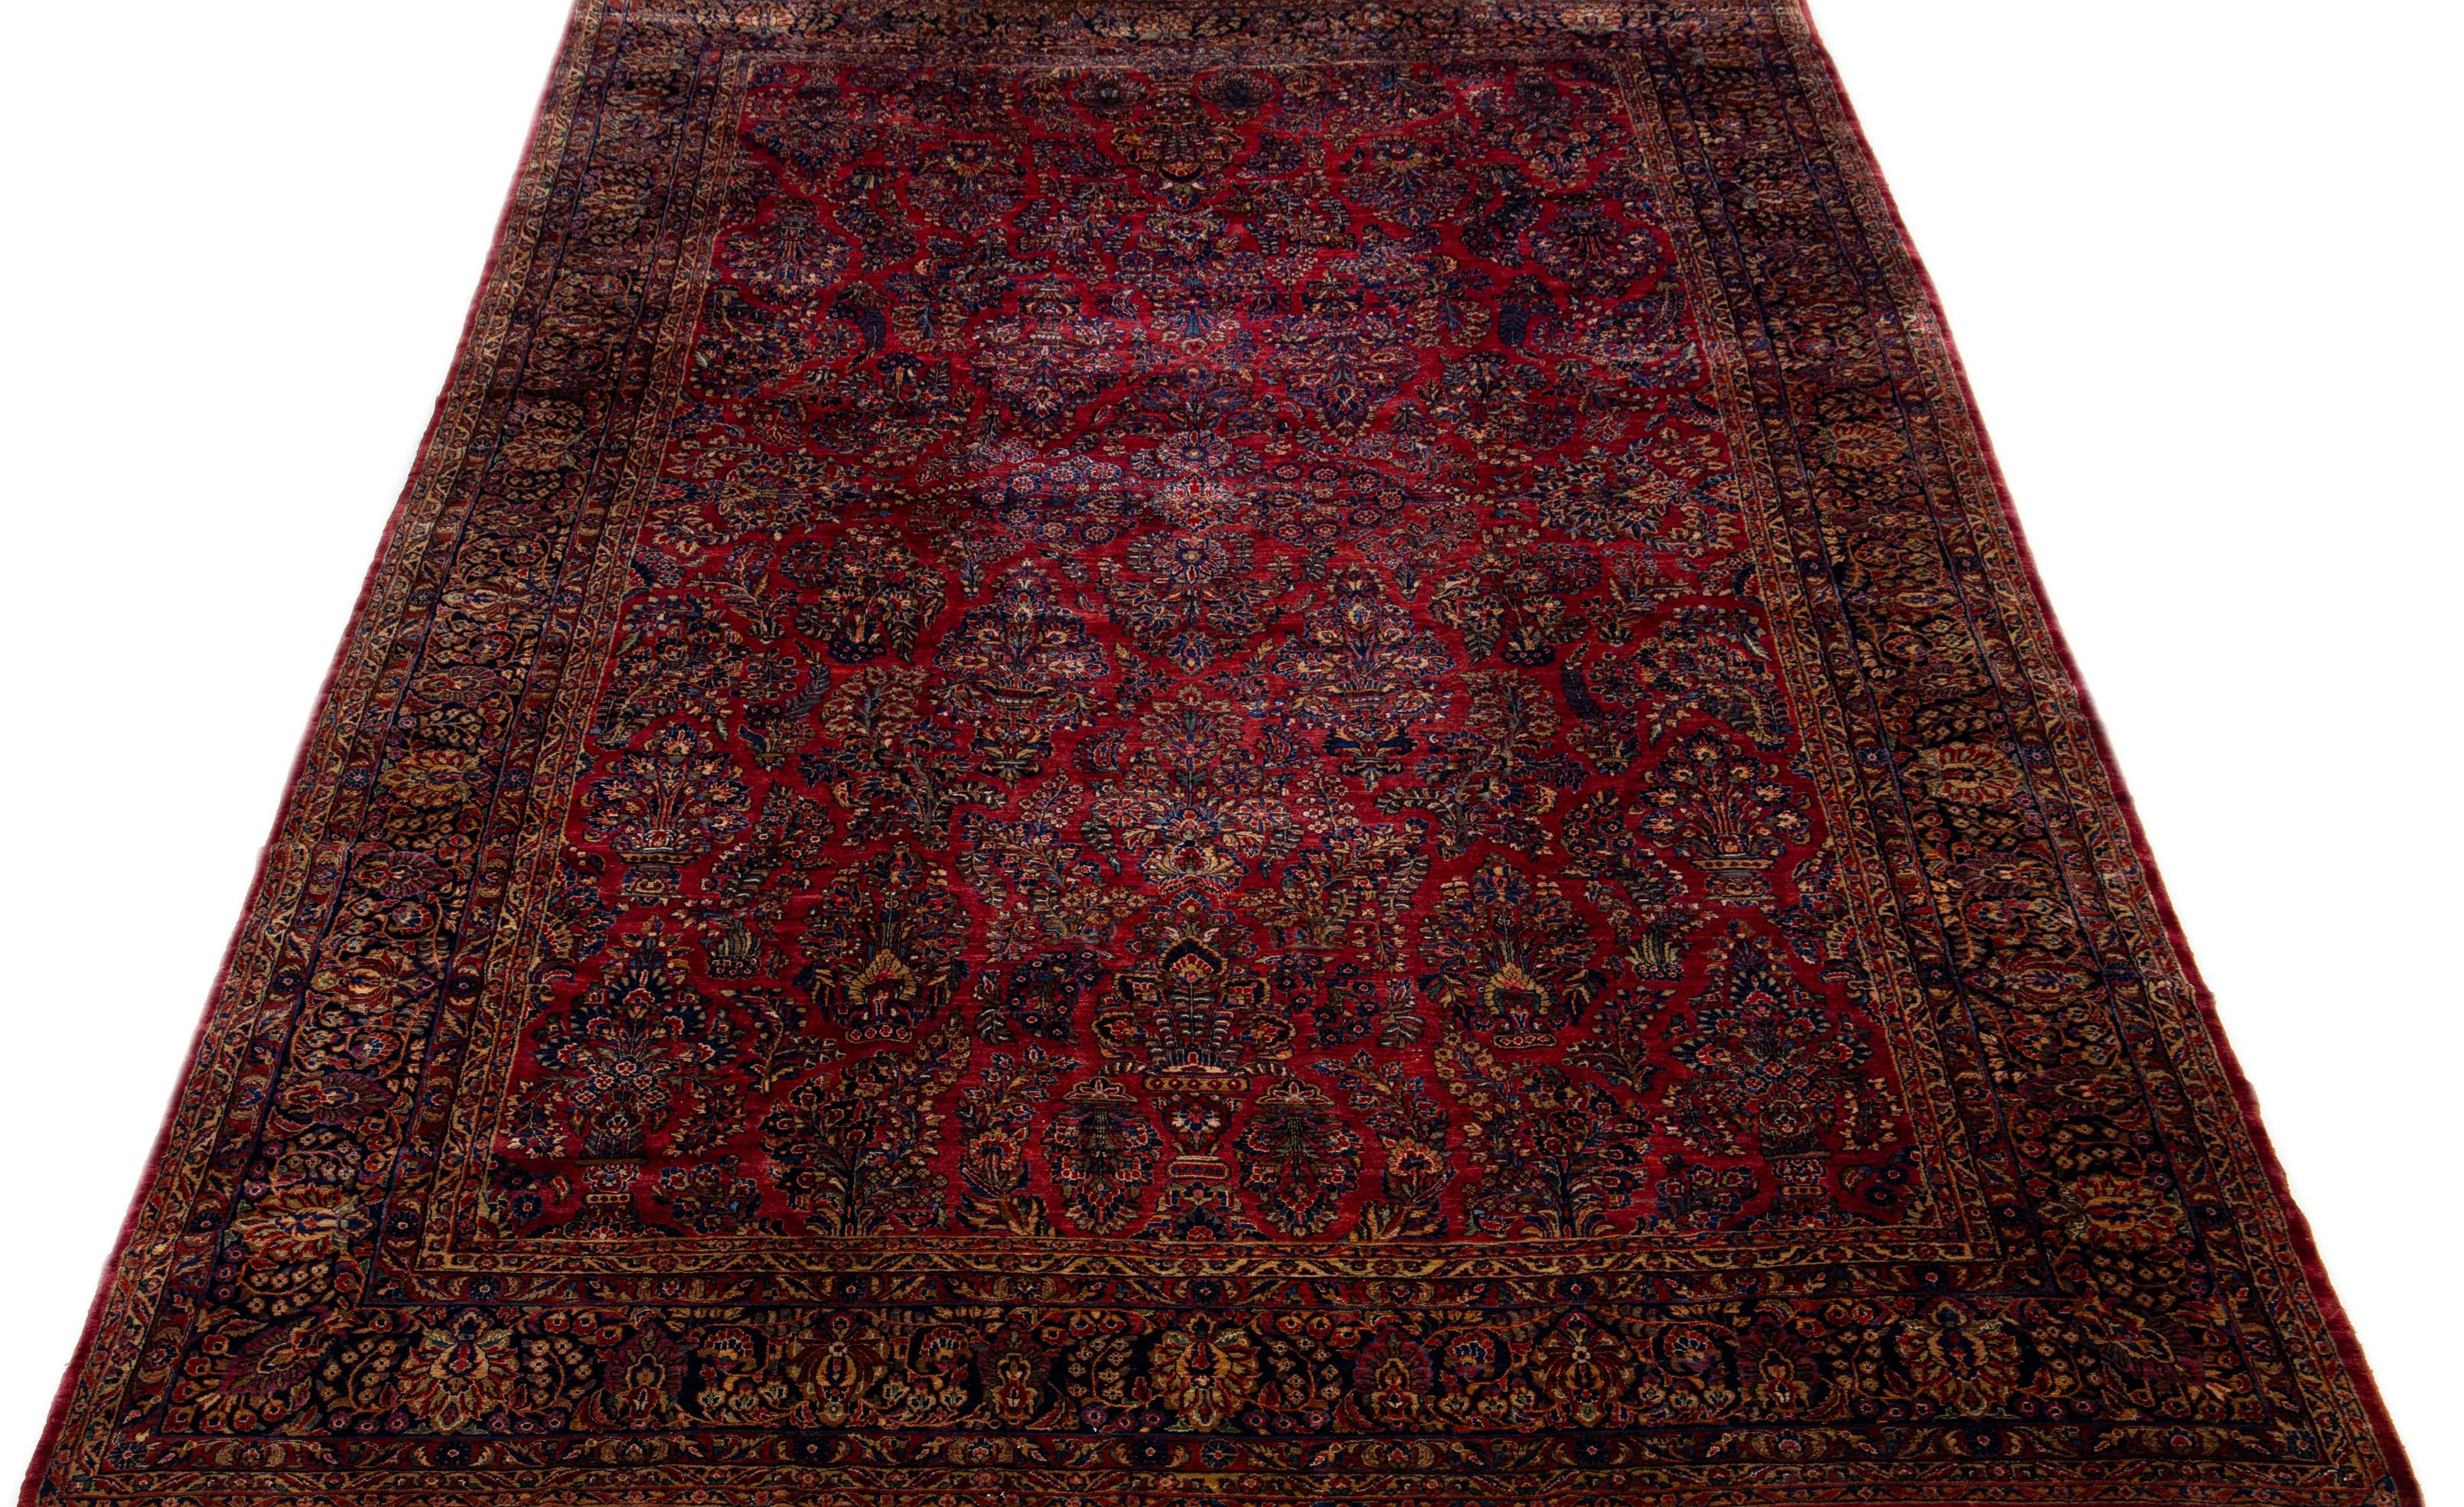 Dieser luxuriöse antike persische Sarouk-Teppich wird in sorgfältiger Handarbeit aus feiner Wolle hergestellt. Sein auffallend rotes Feld wird elegant von einer komplexen dunkelblauen Bordüre umrahmt, die mit einem komplizierten floralen Muster